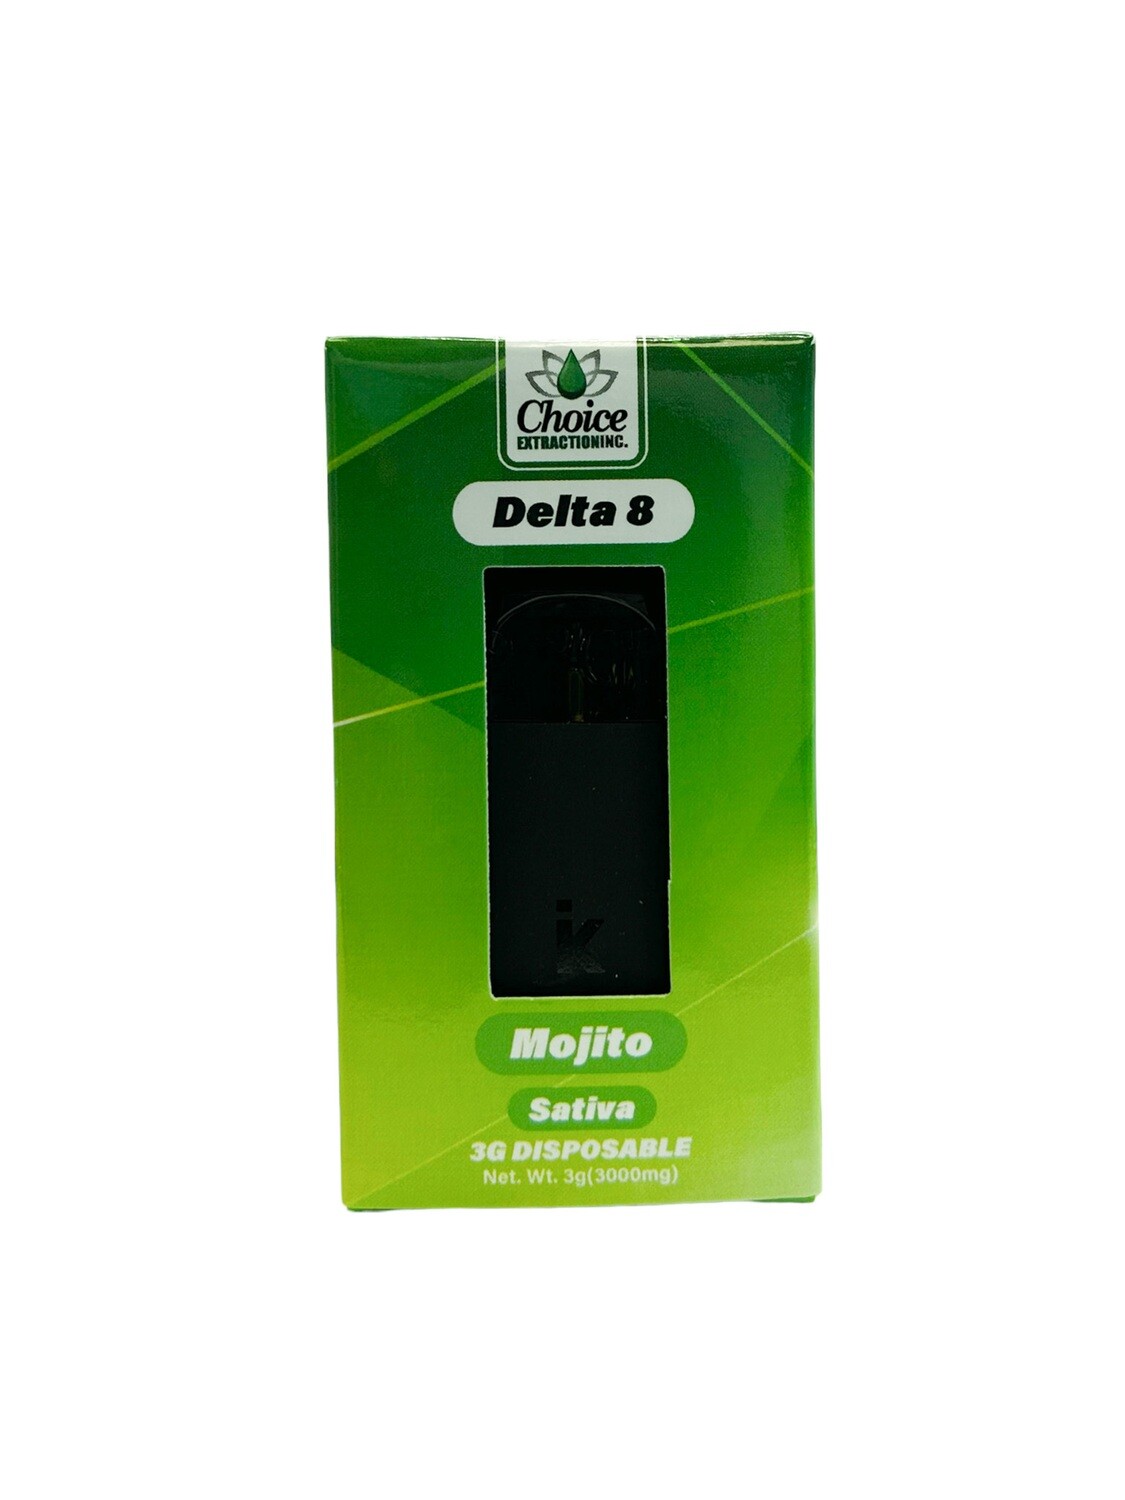 D8 Disposable - Mojito #1 3mL - Sativa